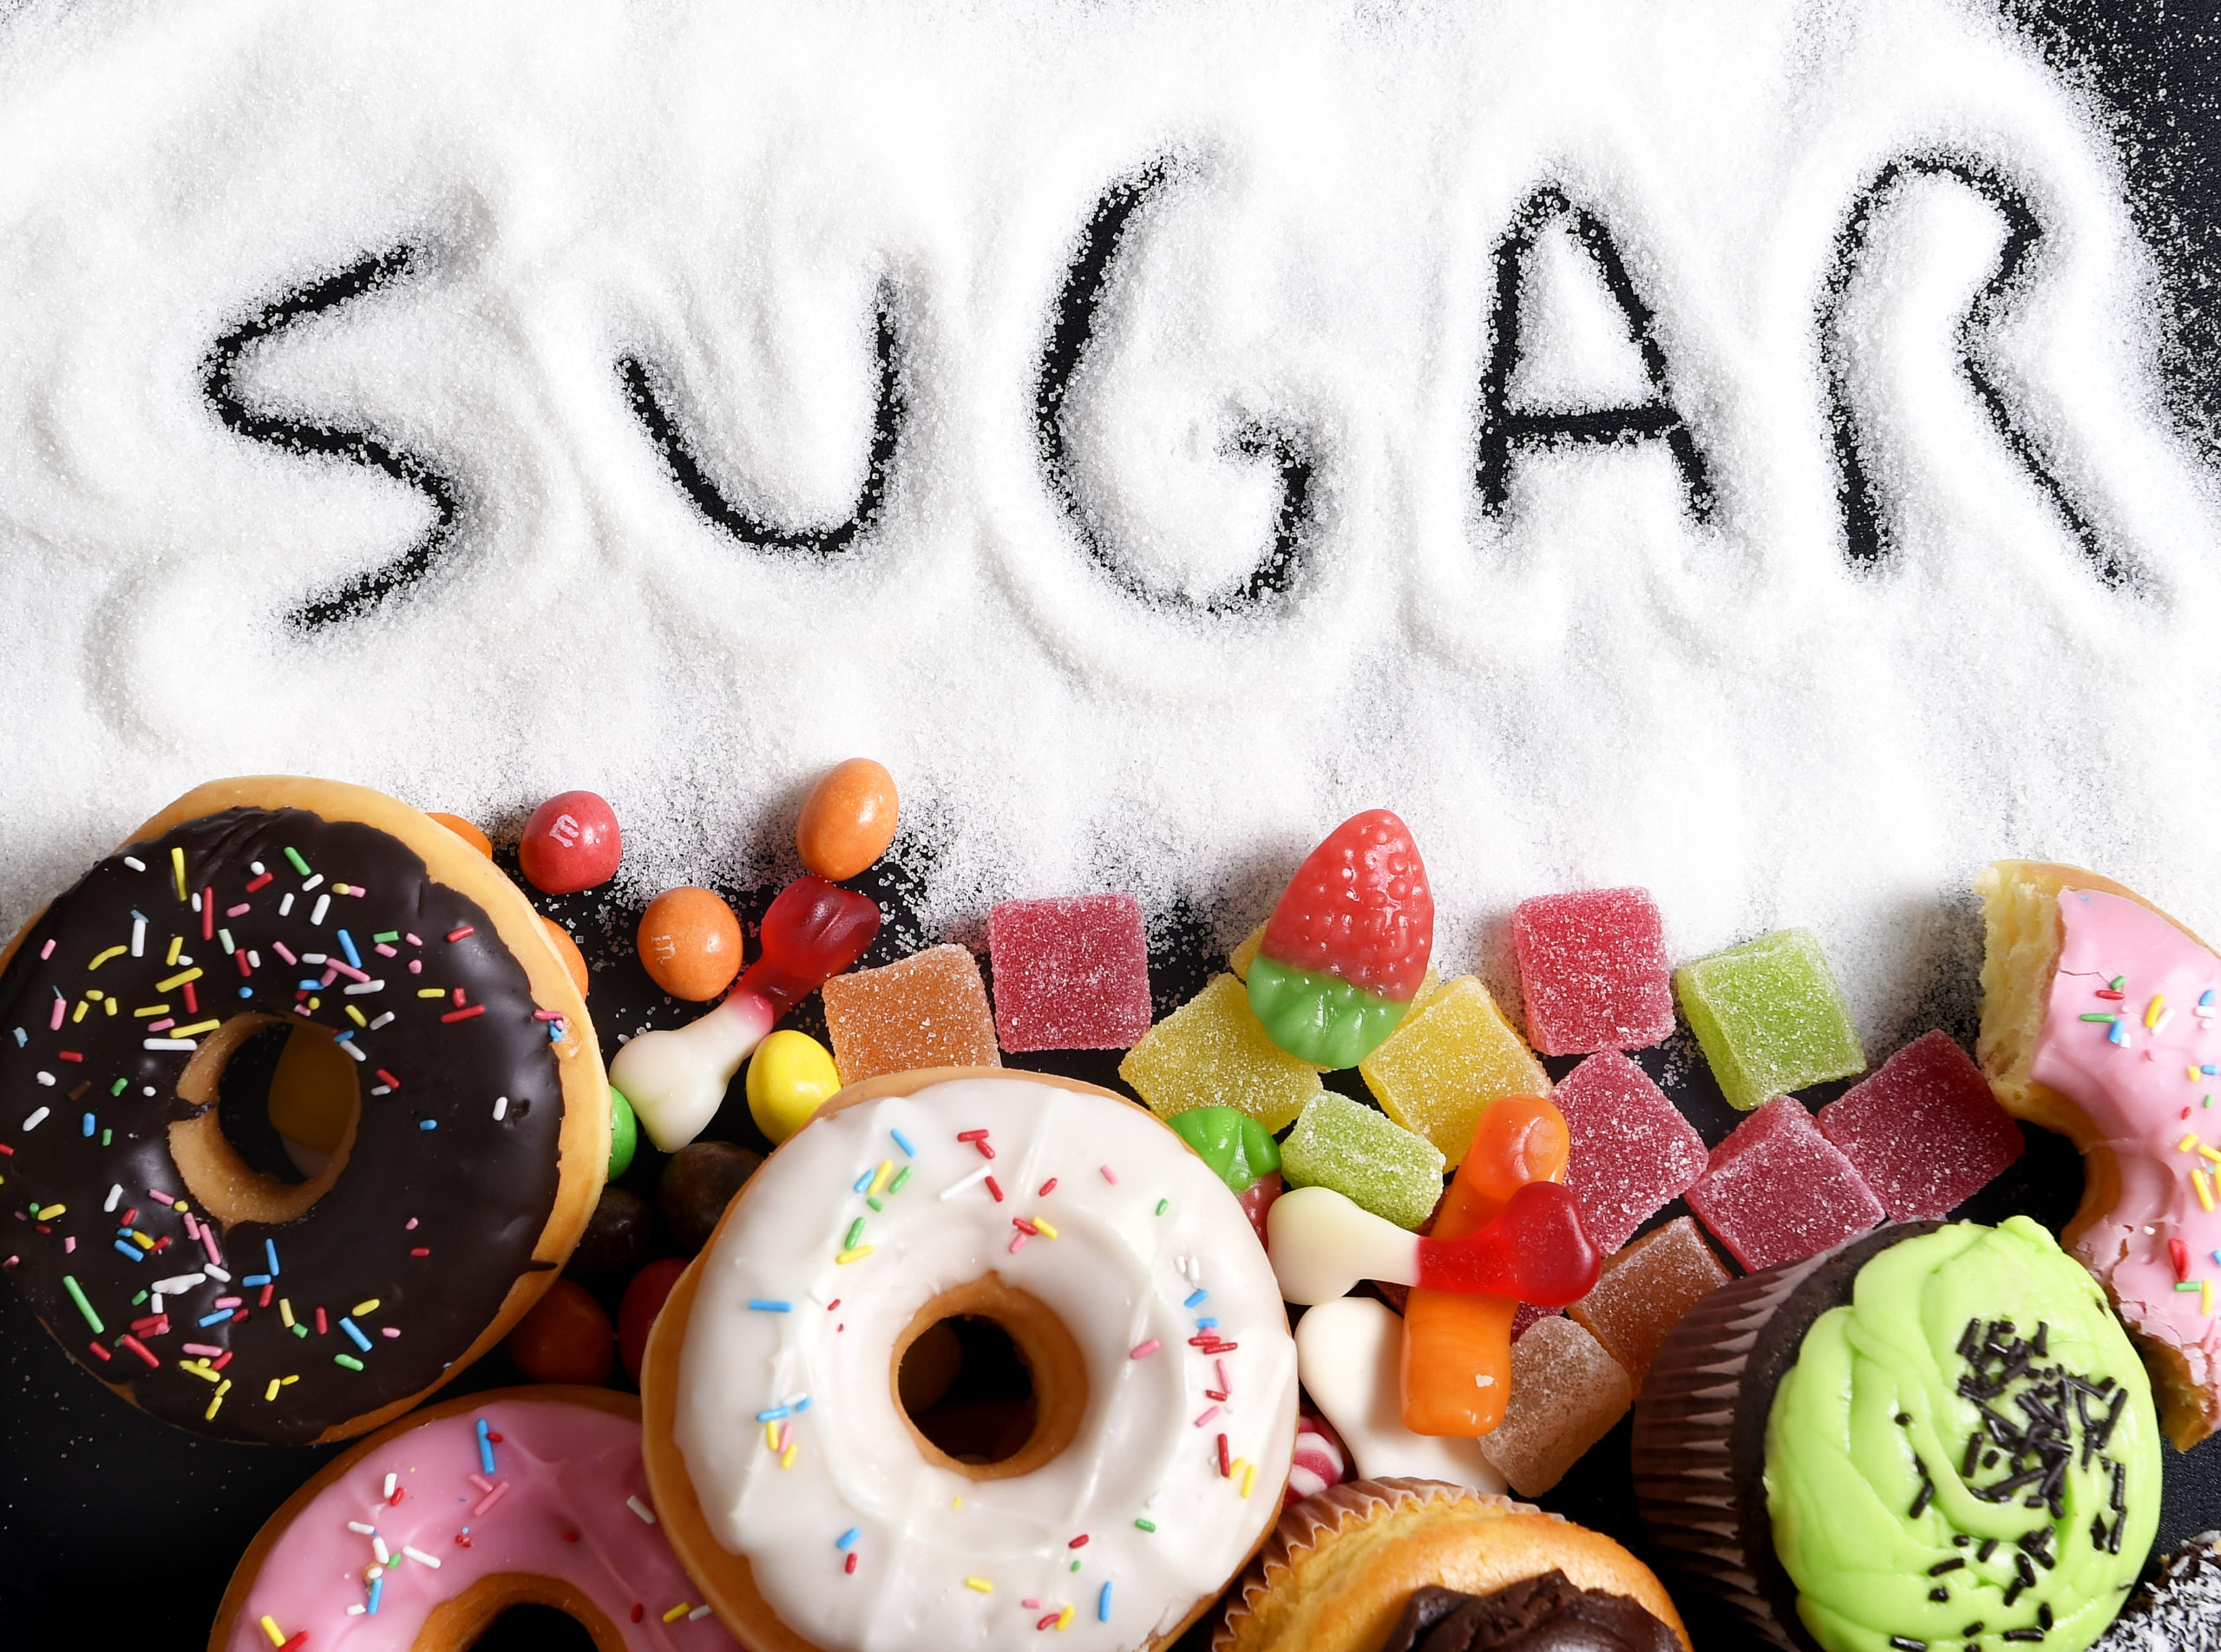 Reduce sugar consumption